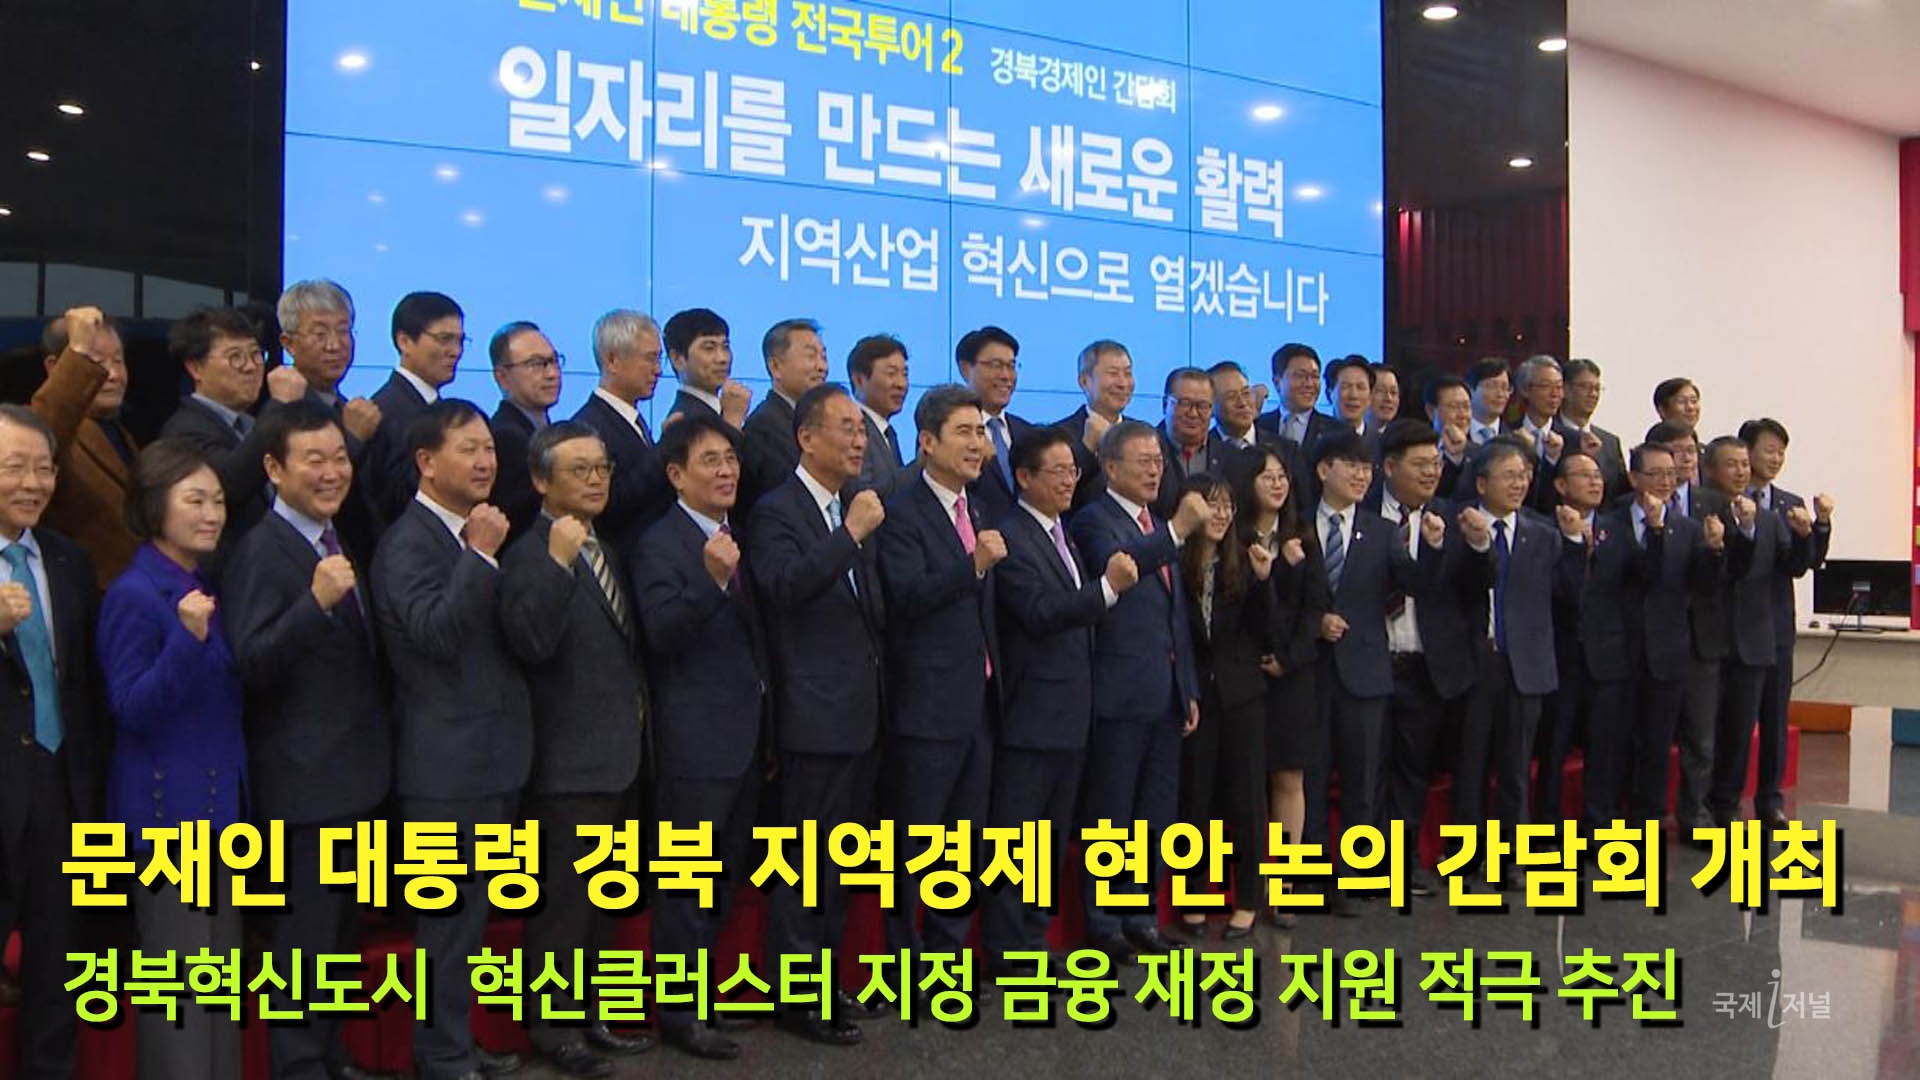 문재인 대통령 경북 지역경제 현안 논의 간담회 개최